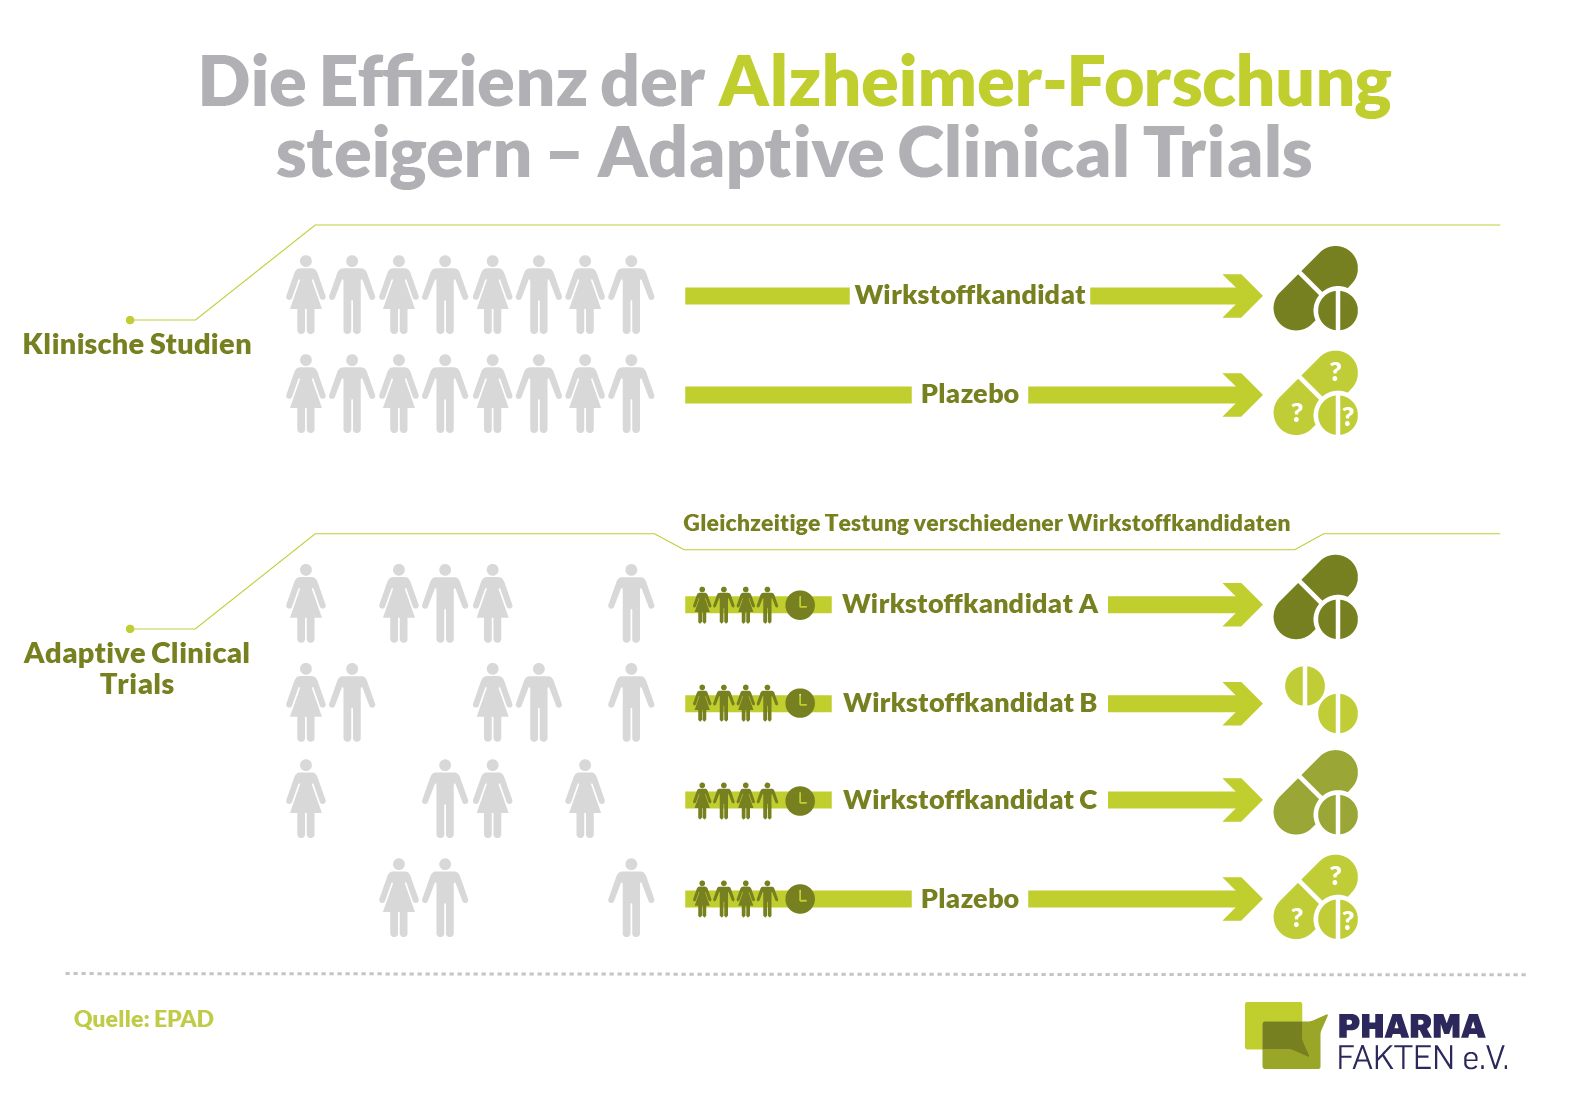 Alzheimer-Forschung: Studien